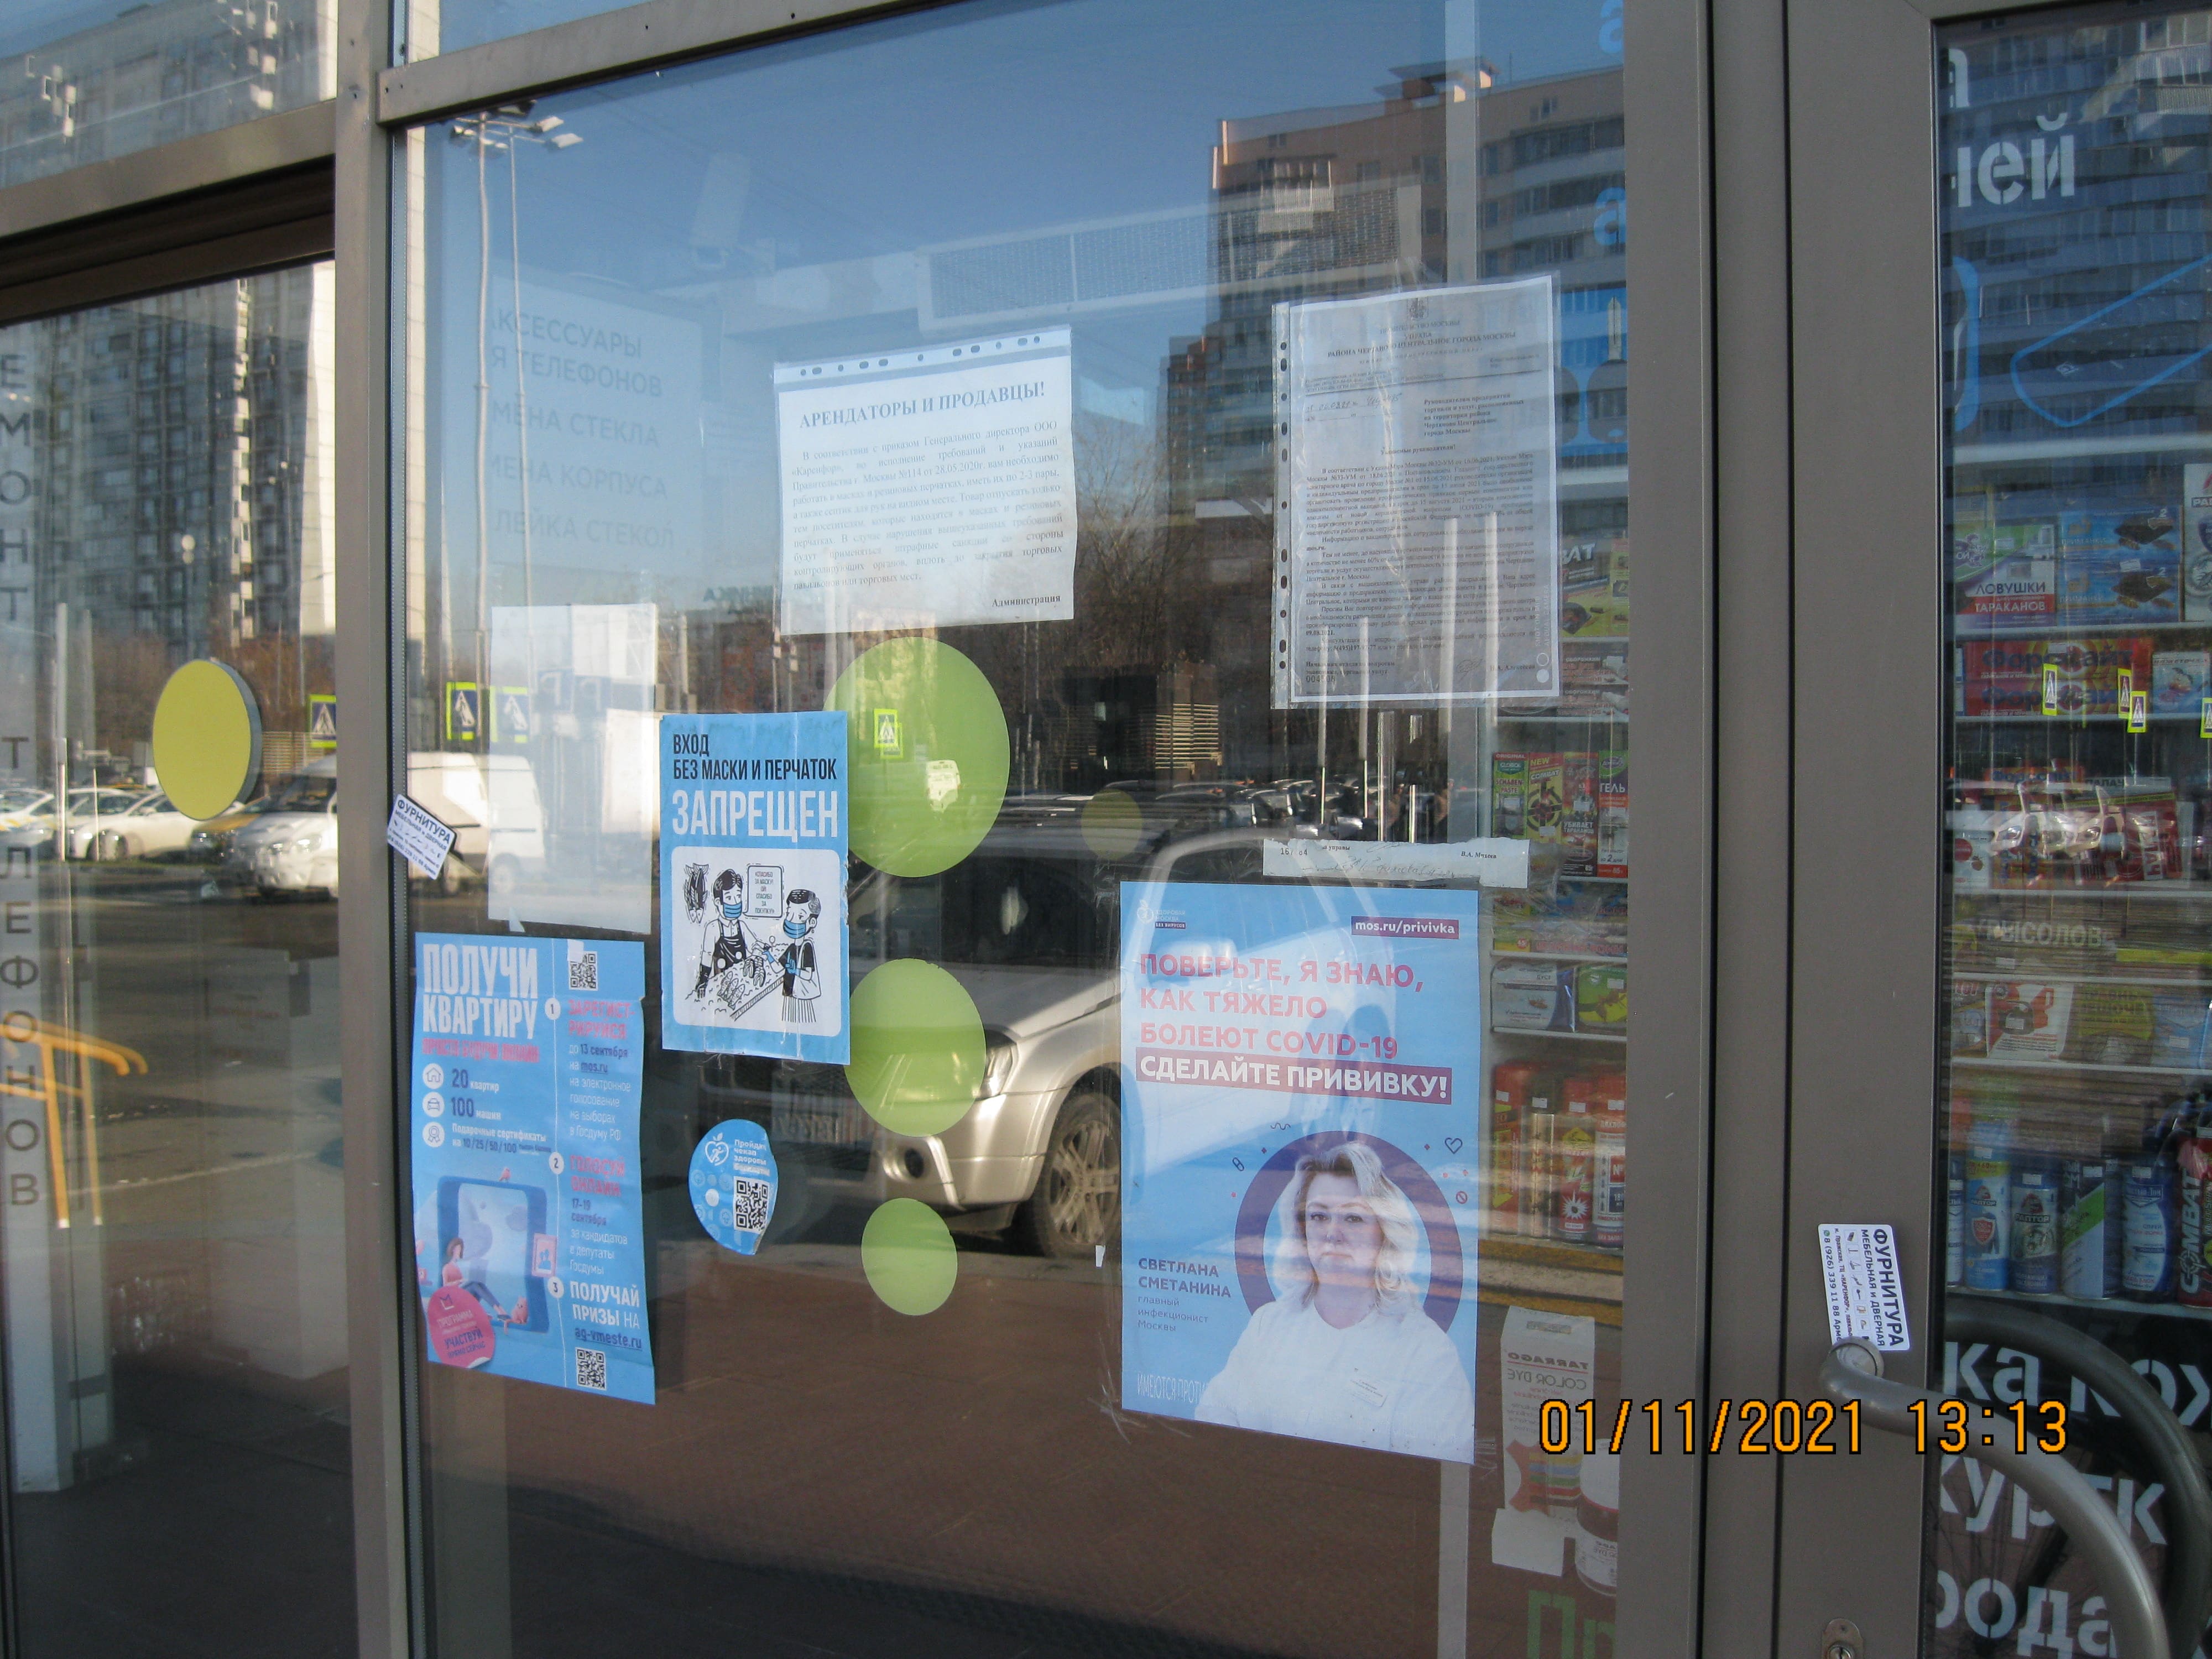 На дверях одного из Торгового Центра Москвы обнаружил любопытное заявление касающееся вакцинации от коронавируса